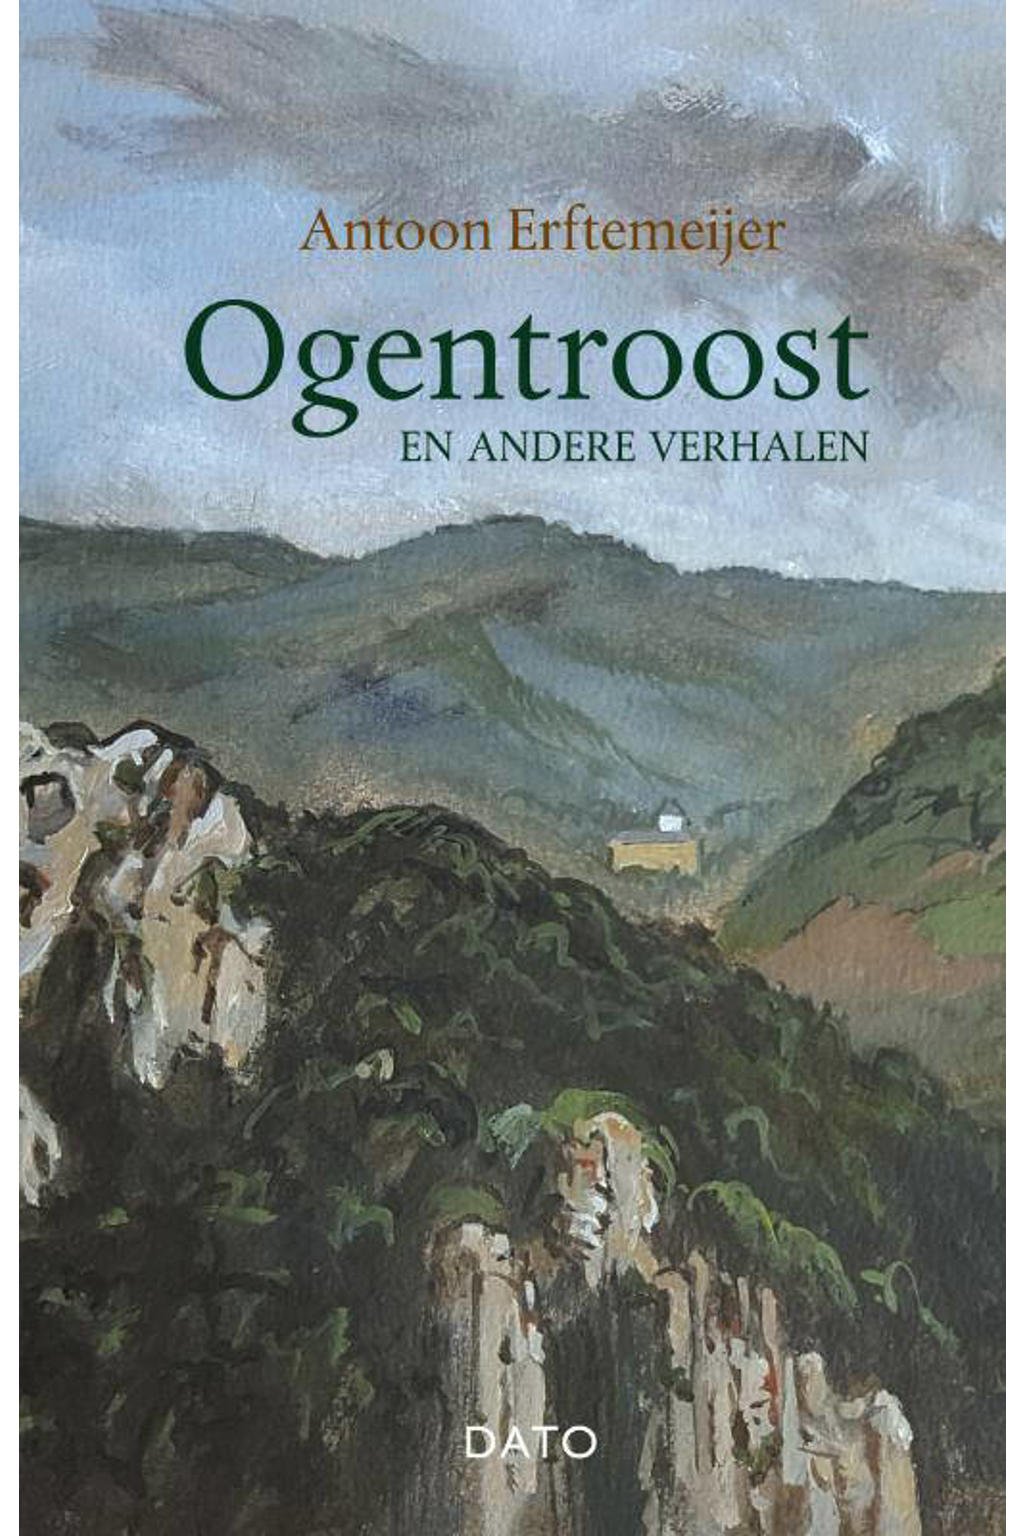 Ogentroost en andere verhalen - Antoon Erftemeijer